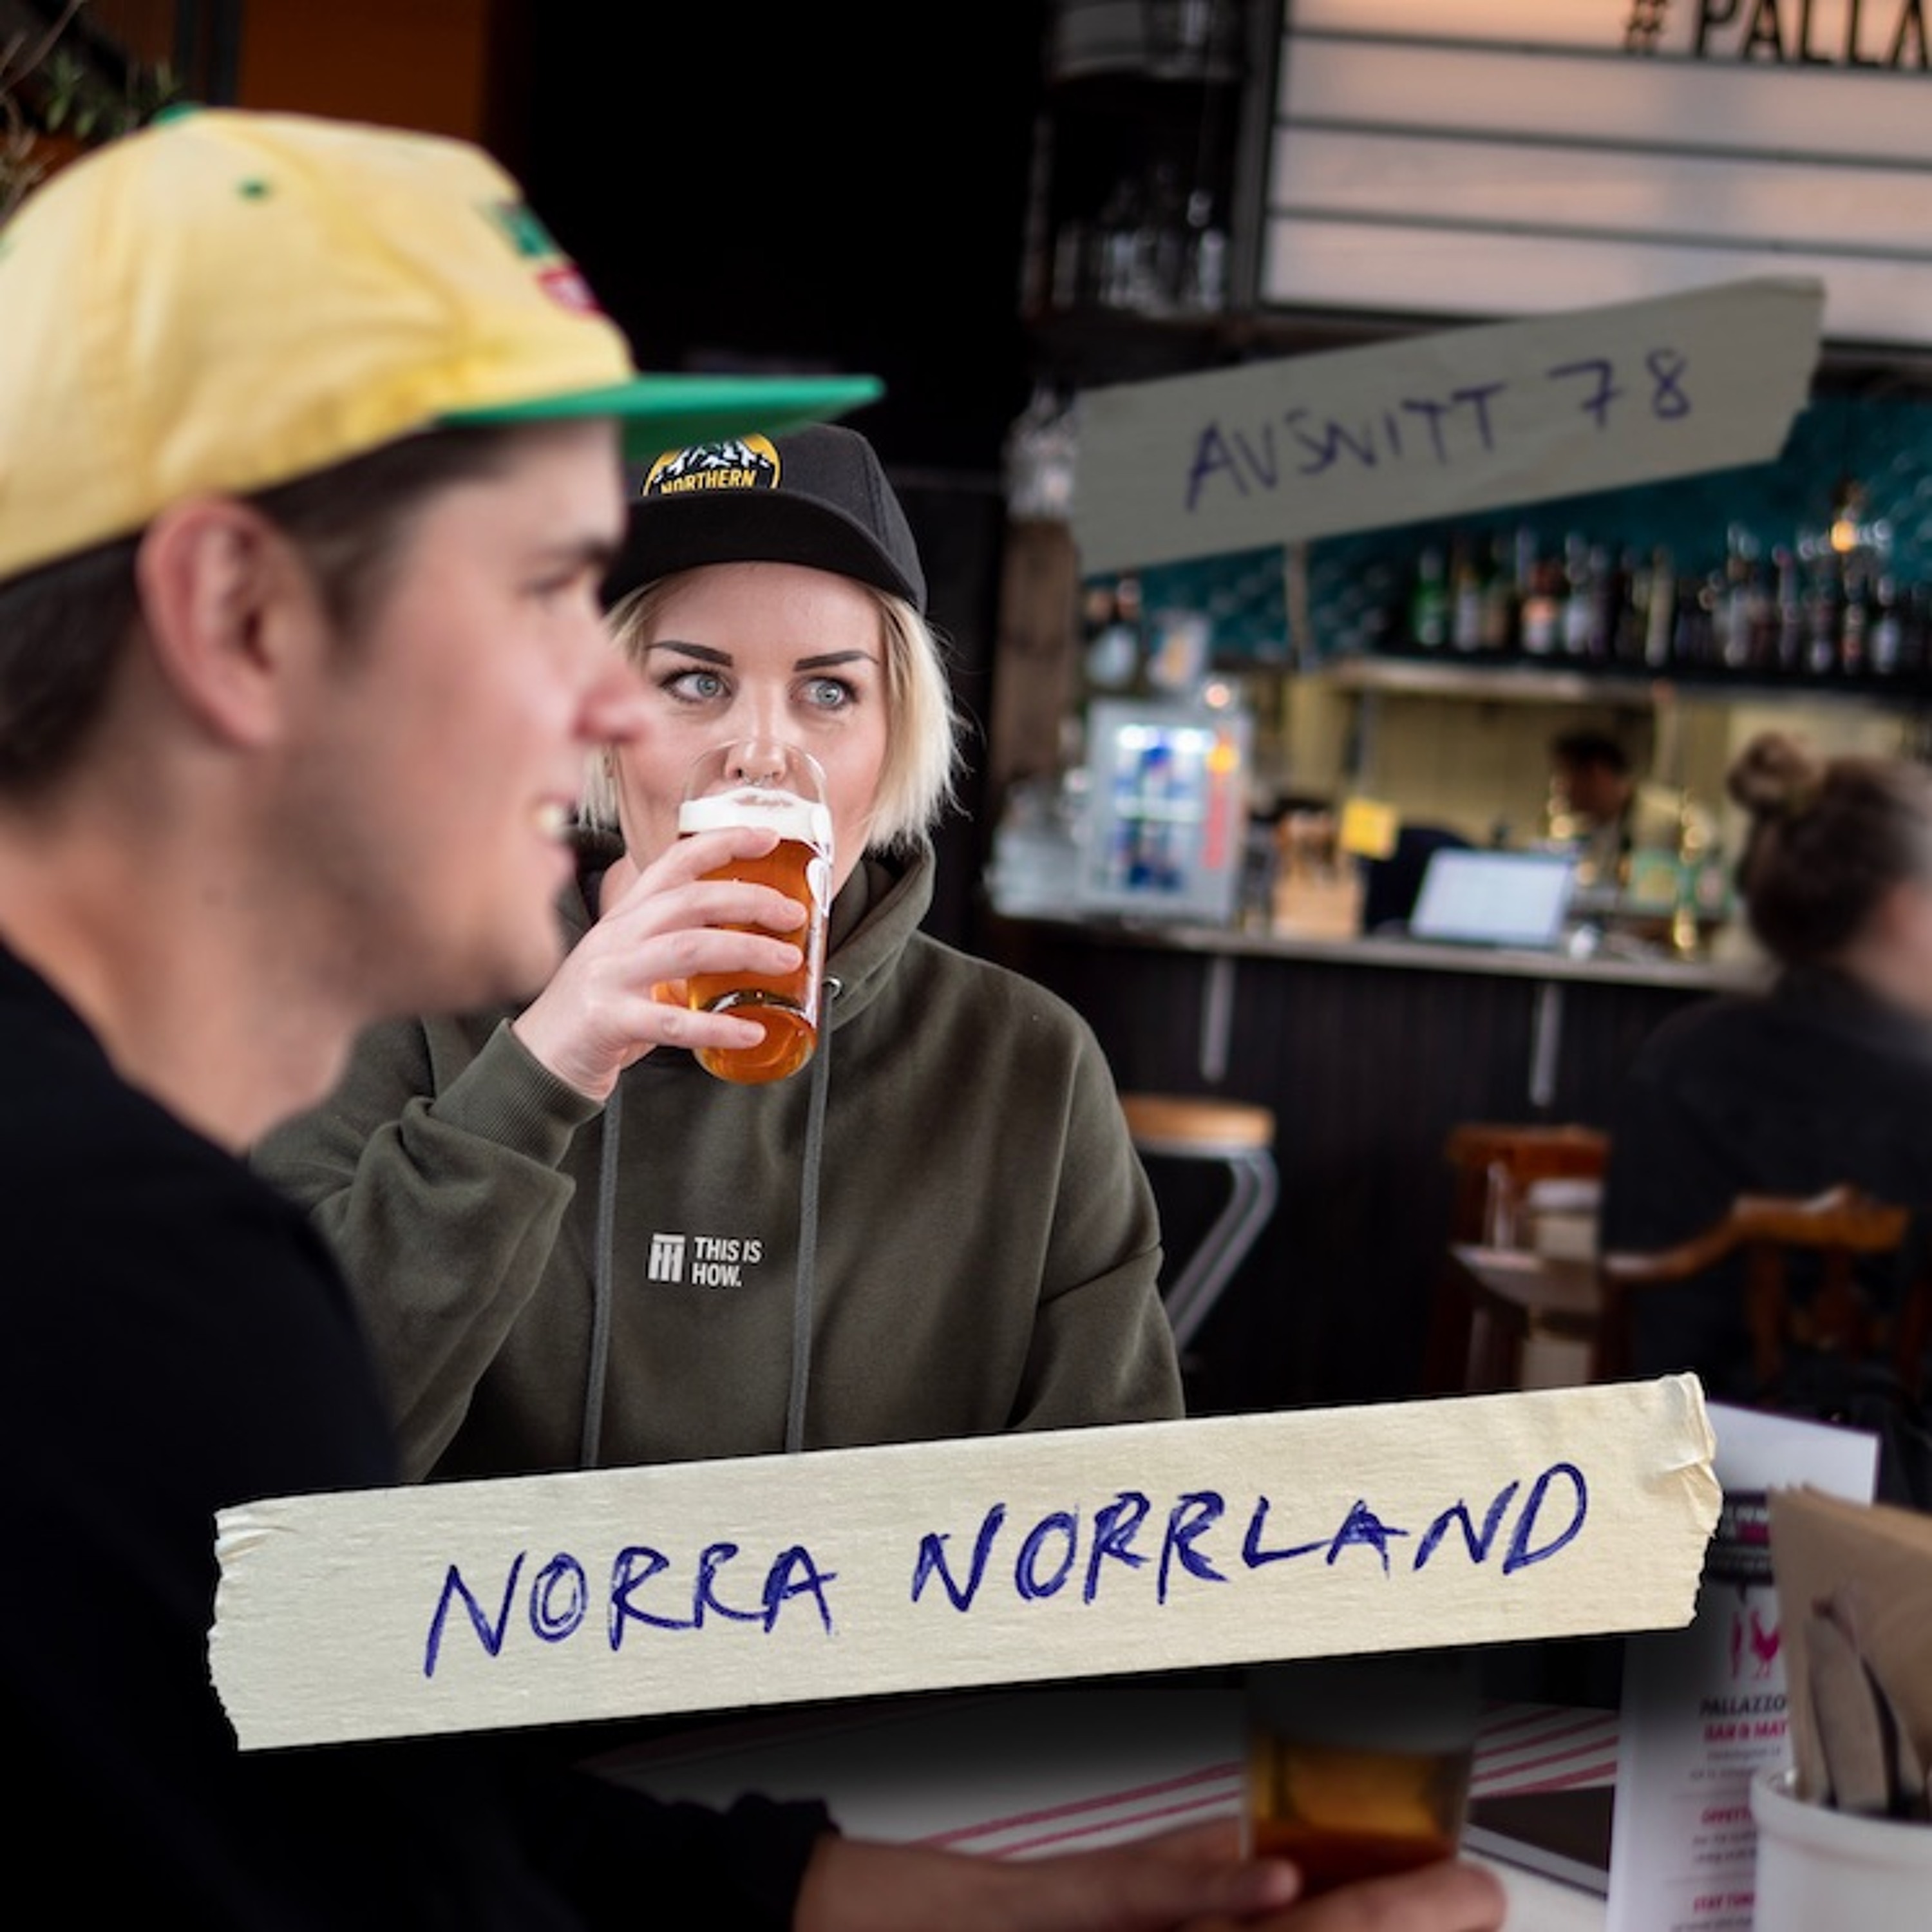 78: Norra Norrland